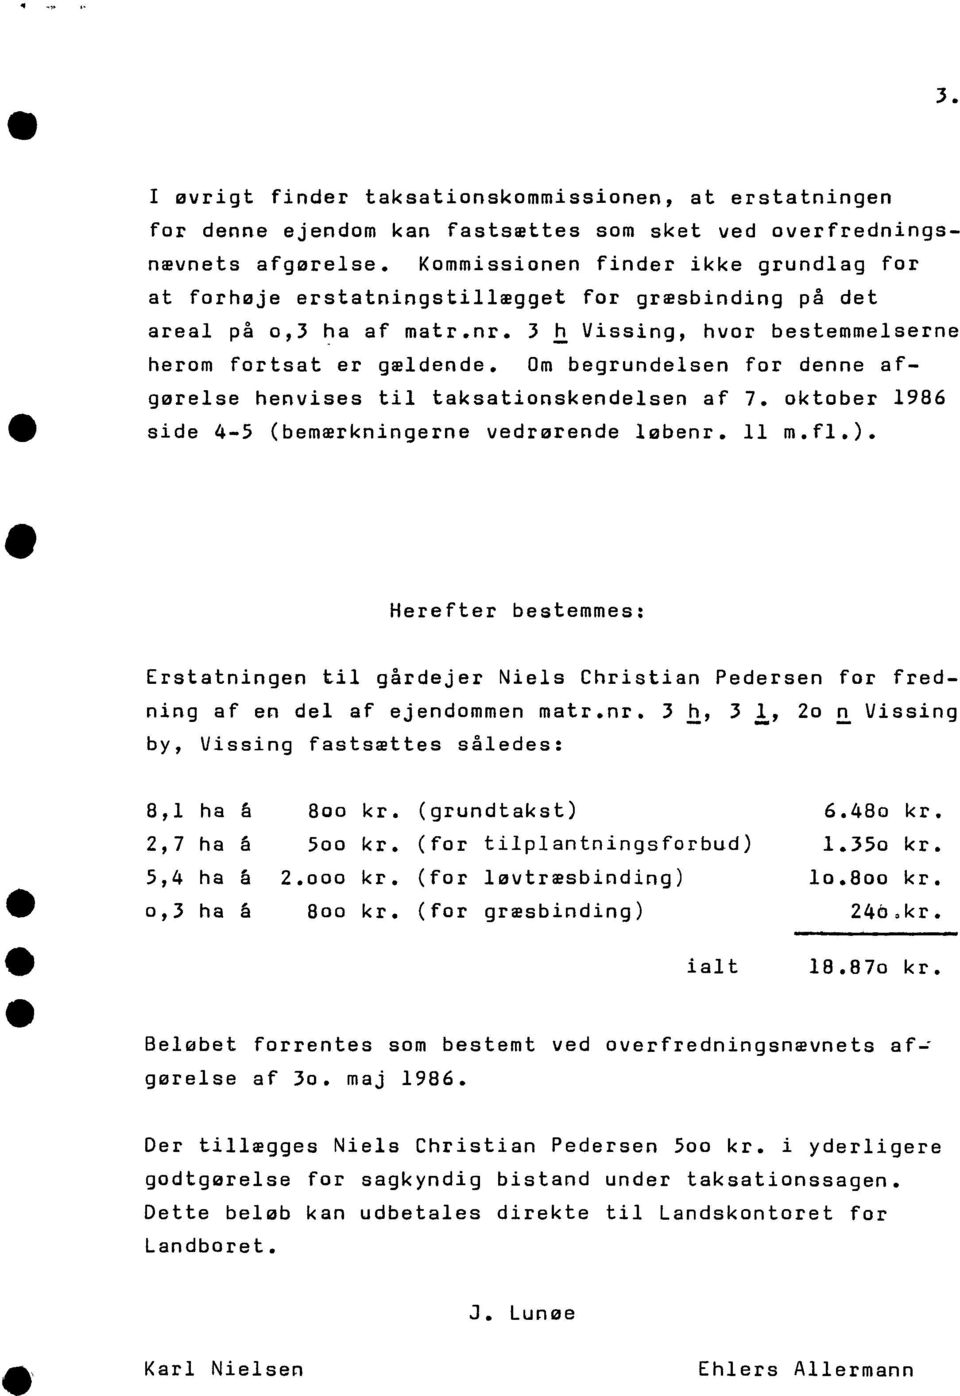 Om bgrundlsn for dnn af- gørls hnviss til taksationskndlsn af 7. oktobr 1986 sid 4-5 (bmærkningrn vdrørnd løbnr. 11 m.fl.).